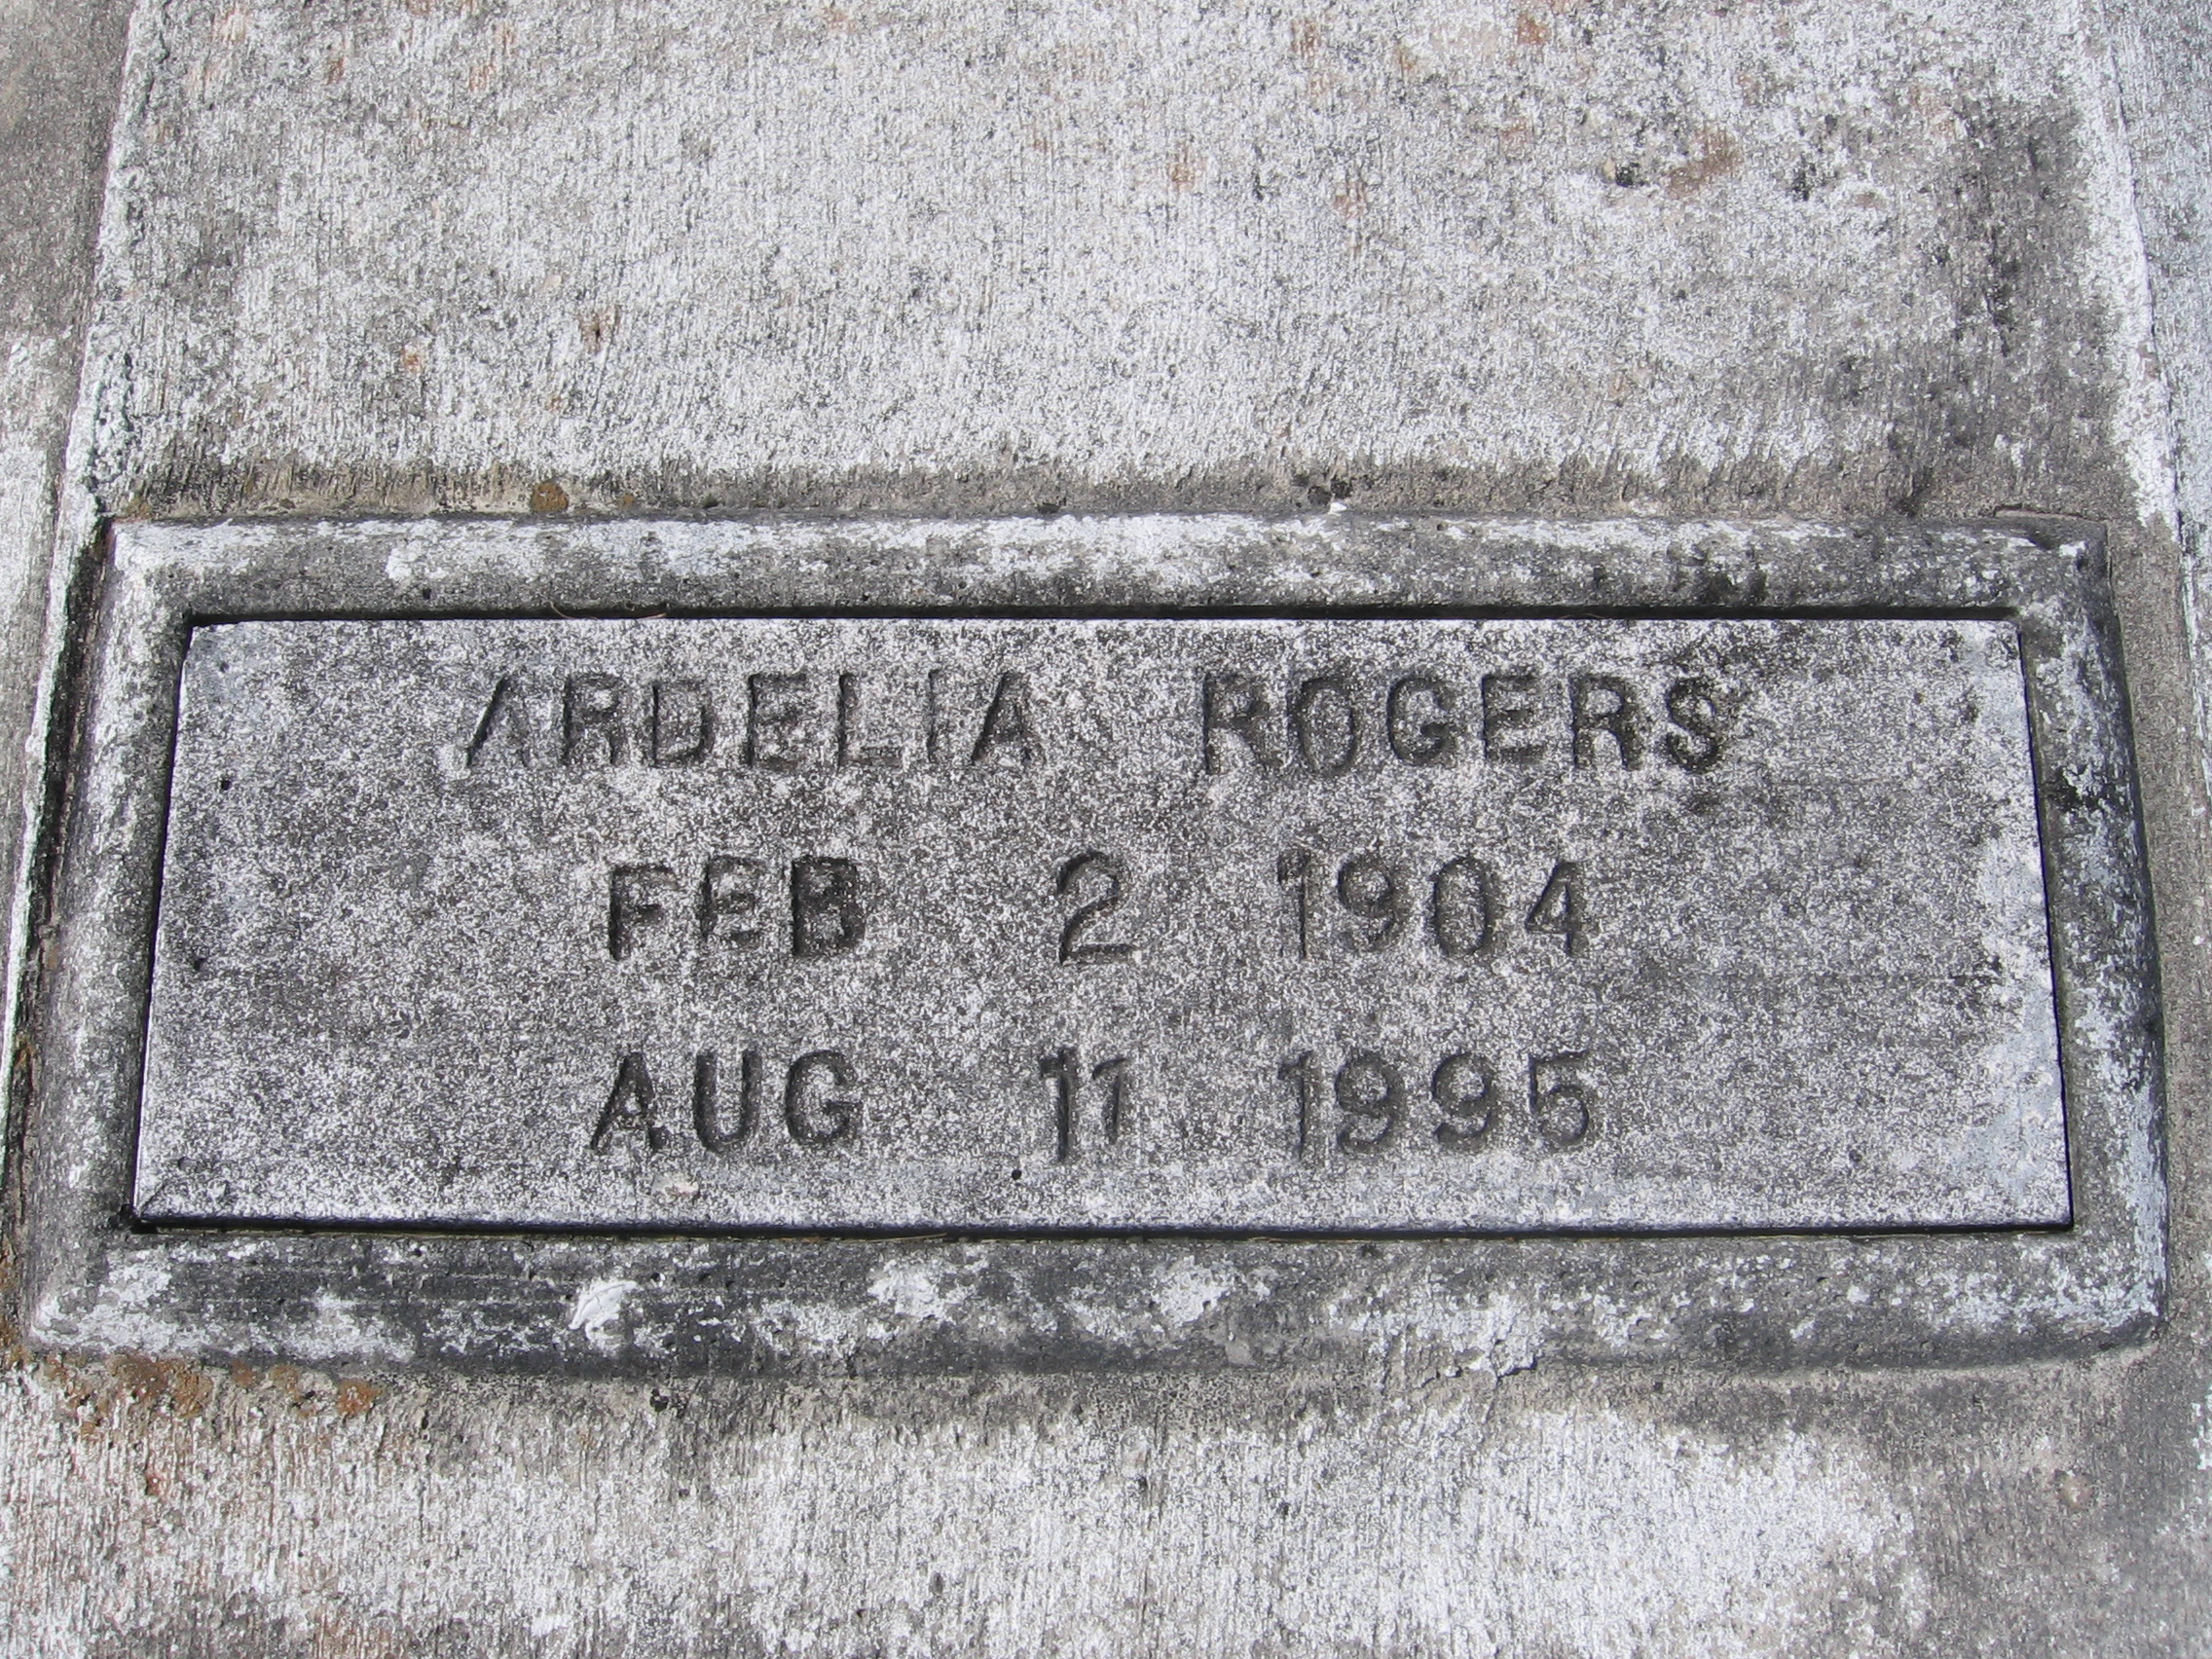 Ardelia Rogers